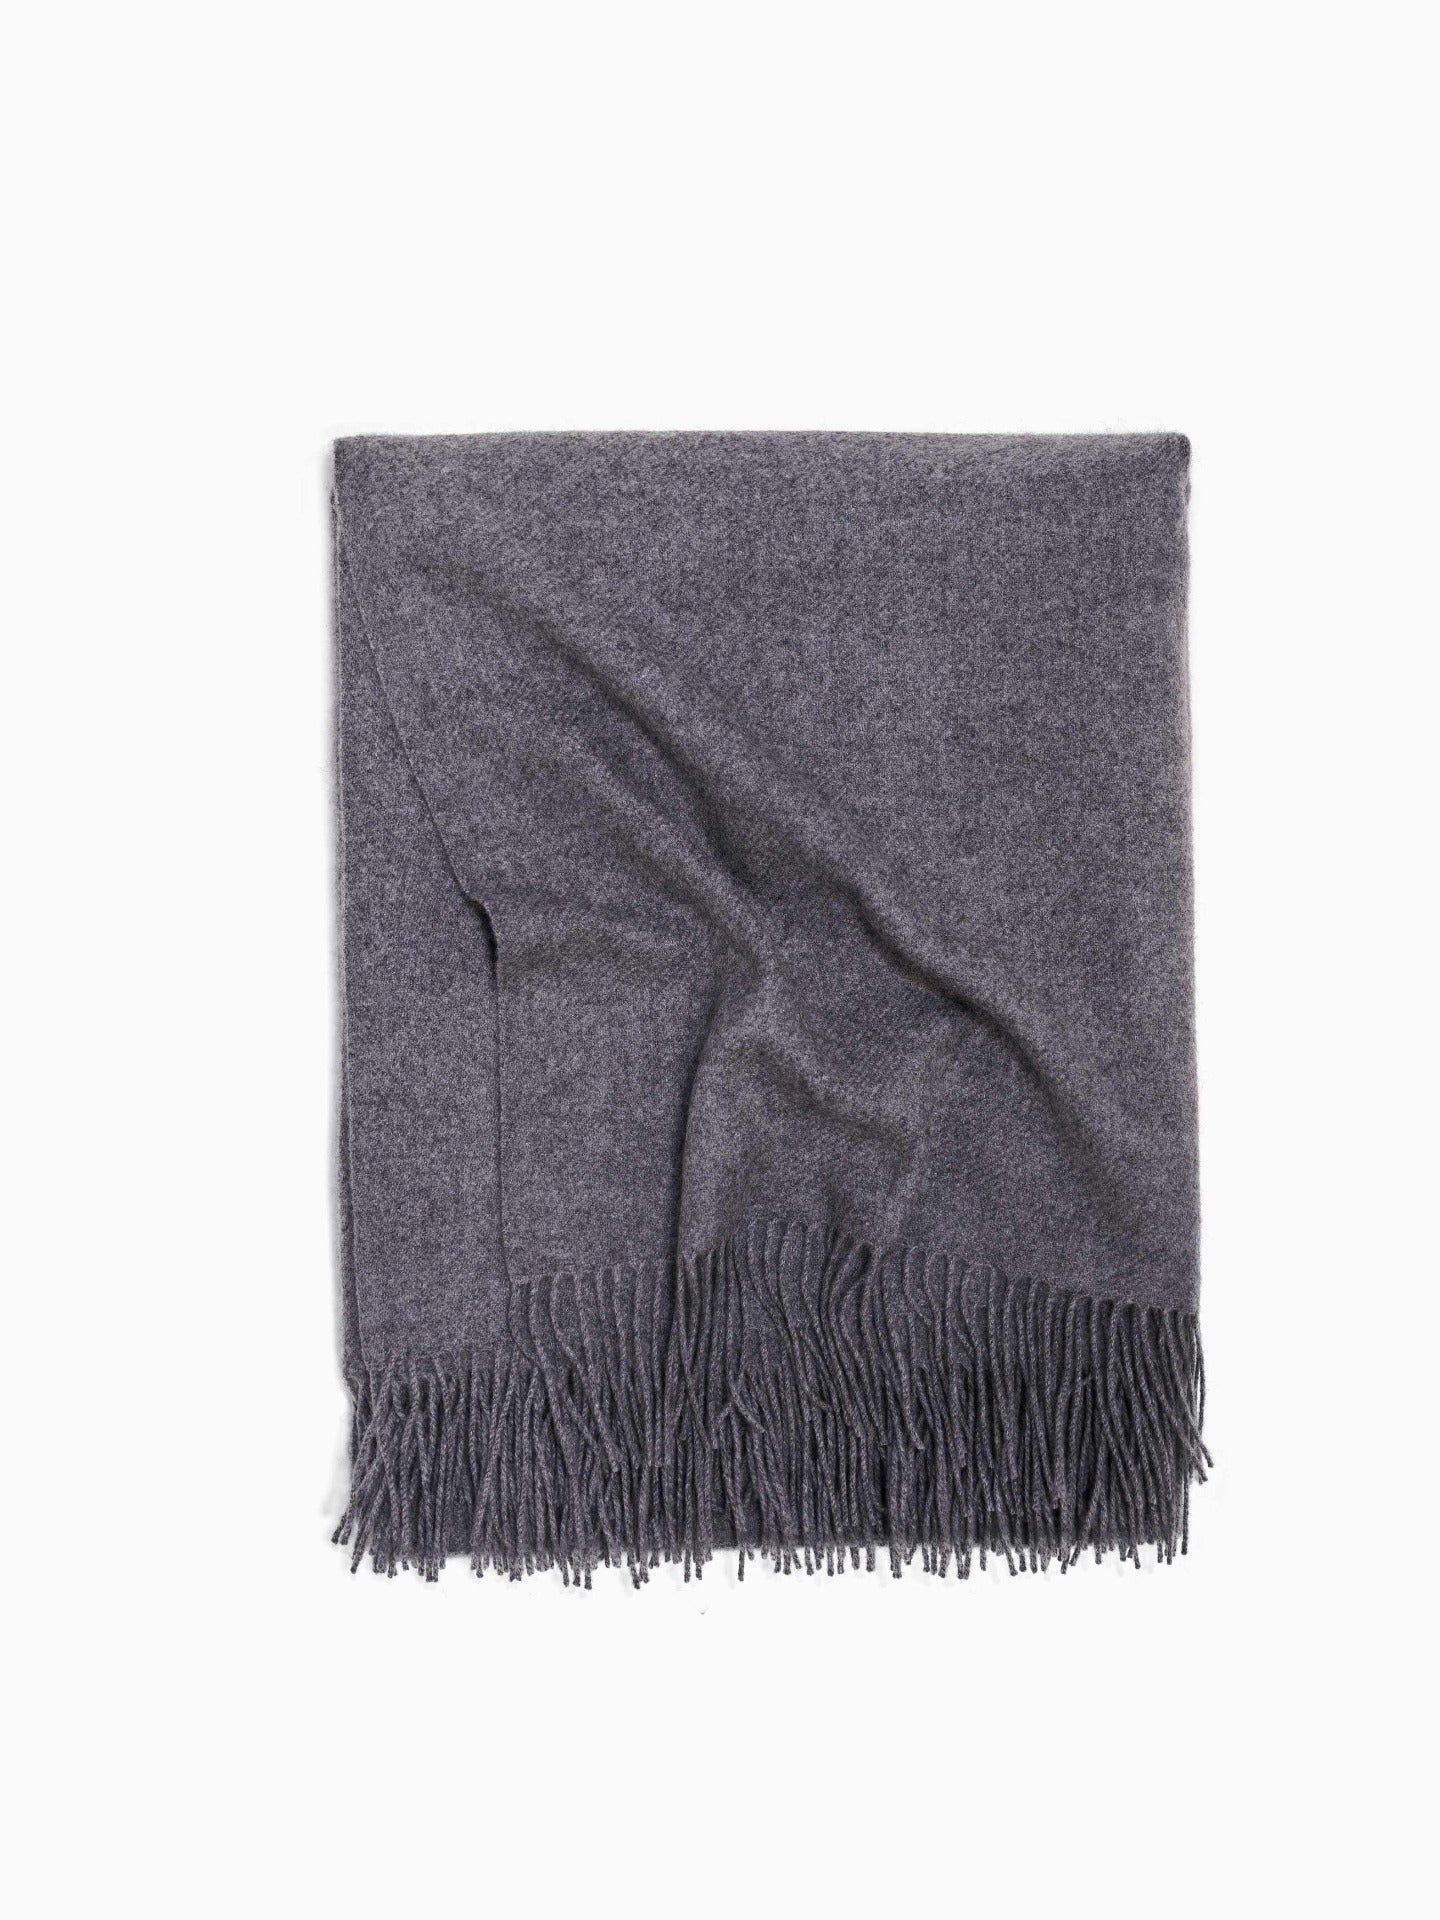 Cashmere Medium Blanket With Fringe Gray - Gobi Cashmere